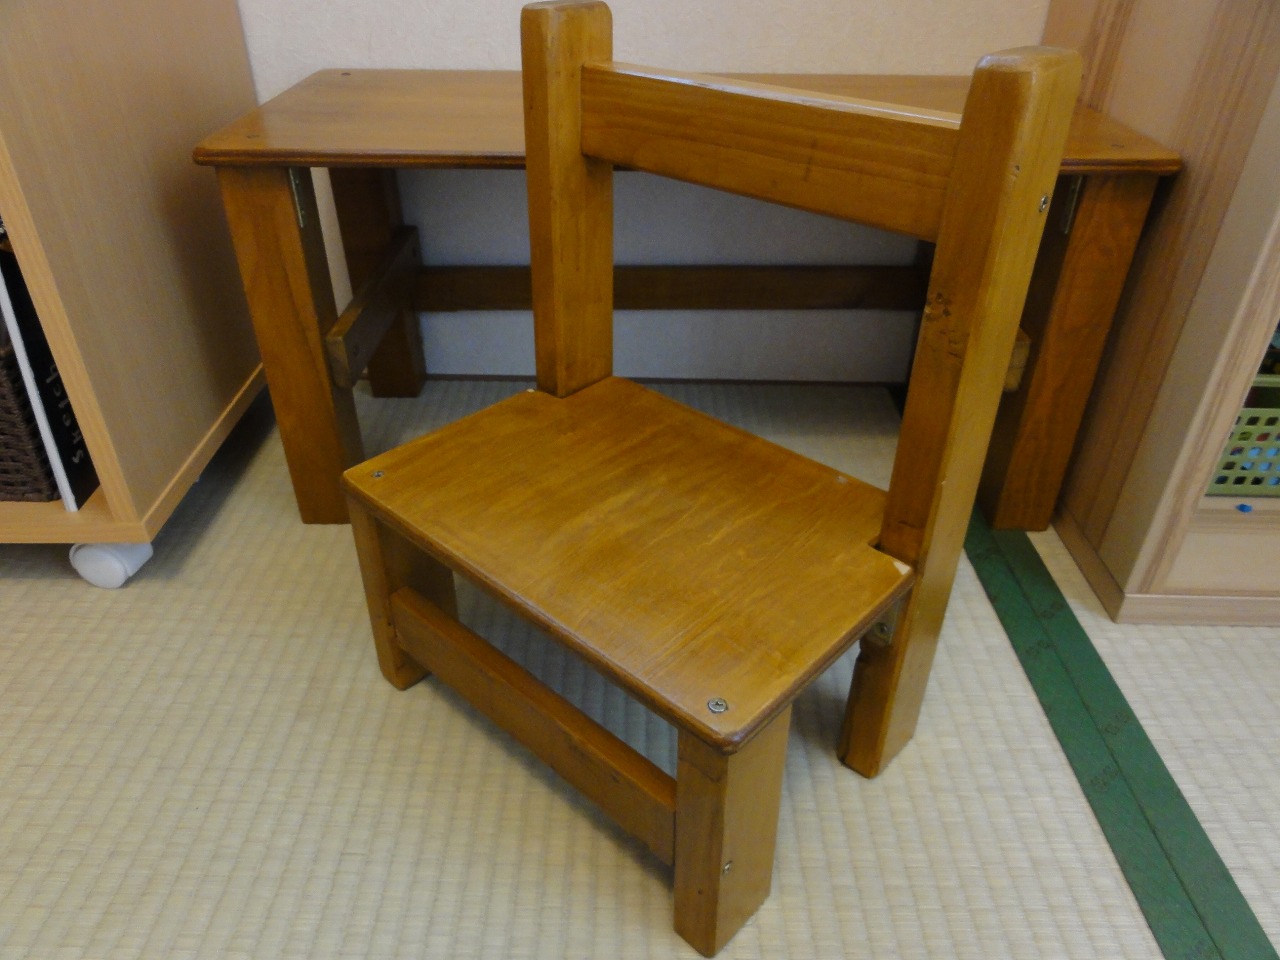 教育用 遊び用 幼児用の机と椅子を簡単にdiyしてみた なるべく自分で作りたい